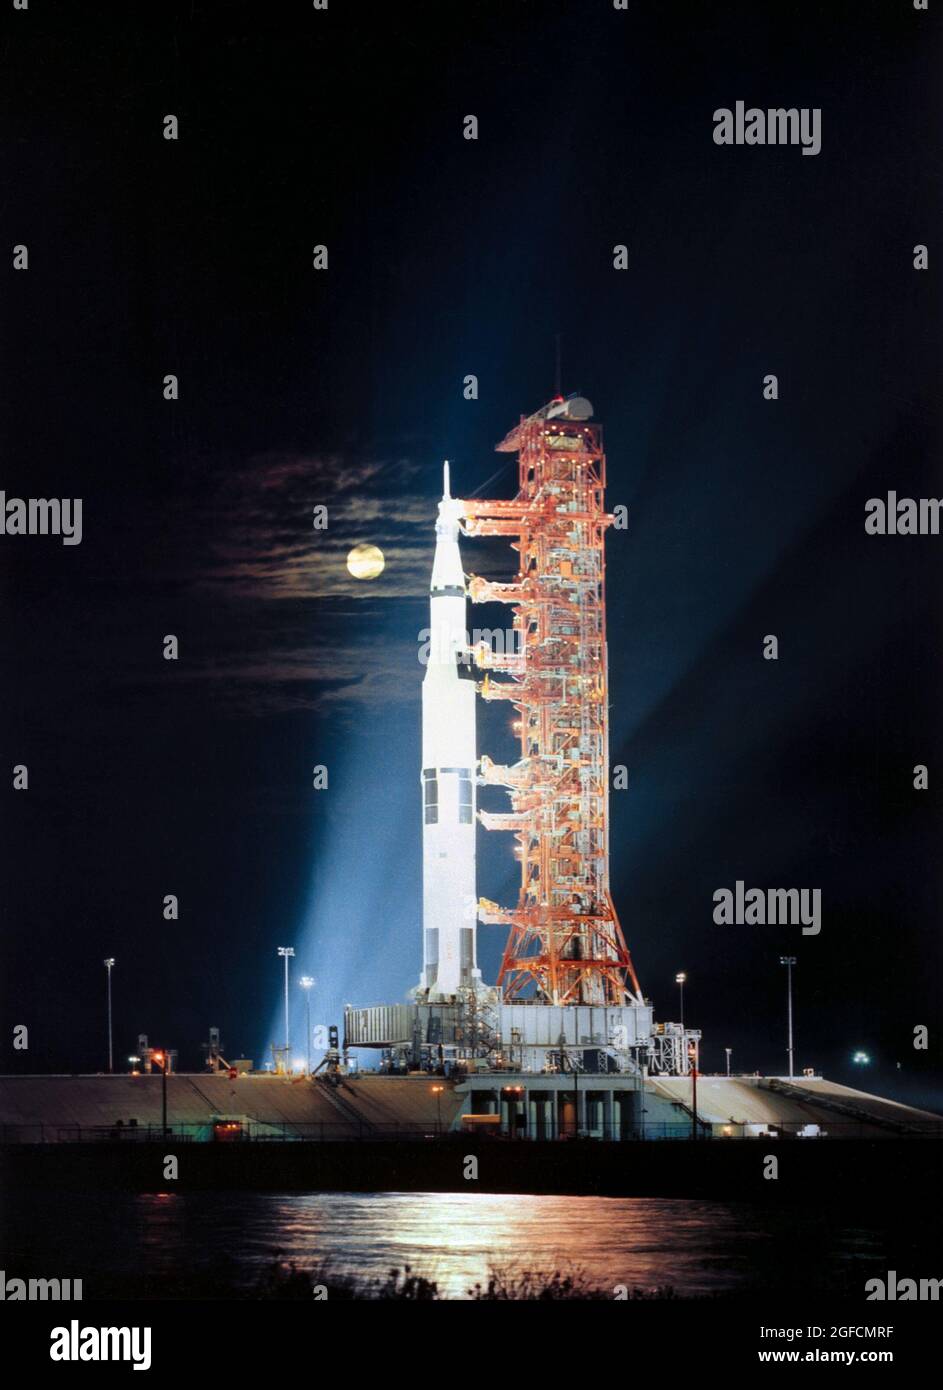 (Noviembre de 1972) --- Las luces de búsqueda iluminan esta escena nocturna en el Pad A, Launch Complex 39, Kennedy Space Center, Florida, mostrando el vehículo espacial Apollo 17 (Sastronave 114/Lunar Module 12/Saturn 512) durante los preparativos previos al lanzamiento. Apolo 17, la última misión de aterrizaje lunar en el programa Apolo de la NASA, será el primer despegue nocturno del enorme vehículo de lanzamiento Saturno V. El lanzamiento de Apollo 17 está programado para la noche del 6 de diciembre de 1972 Foto de stock